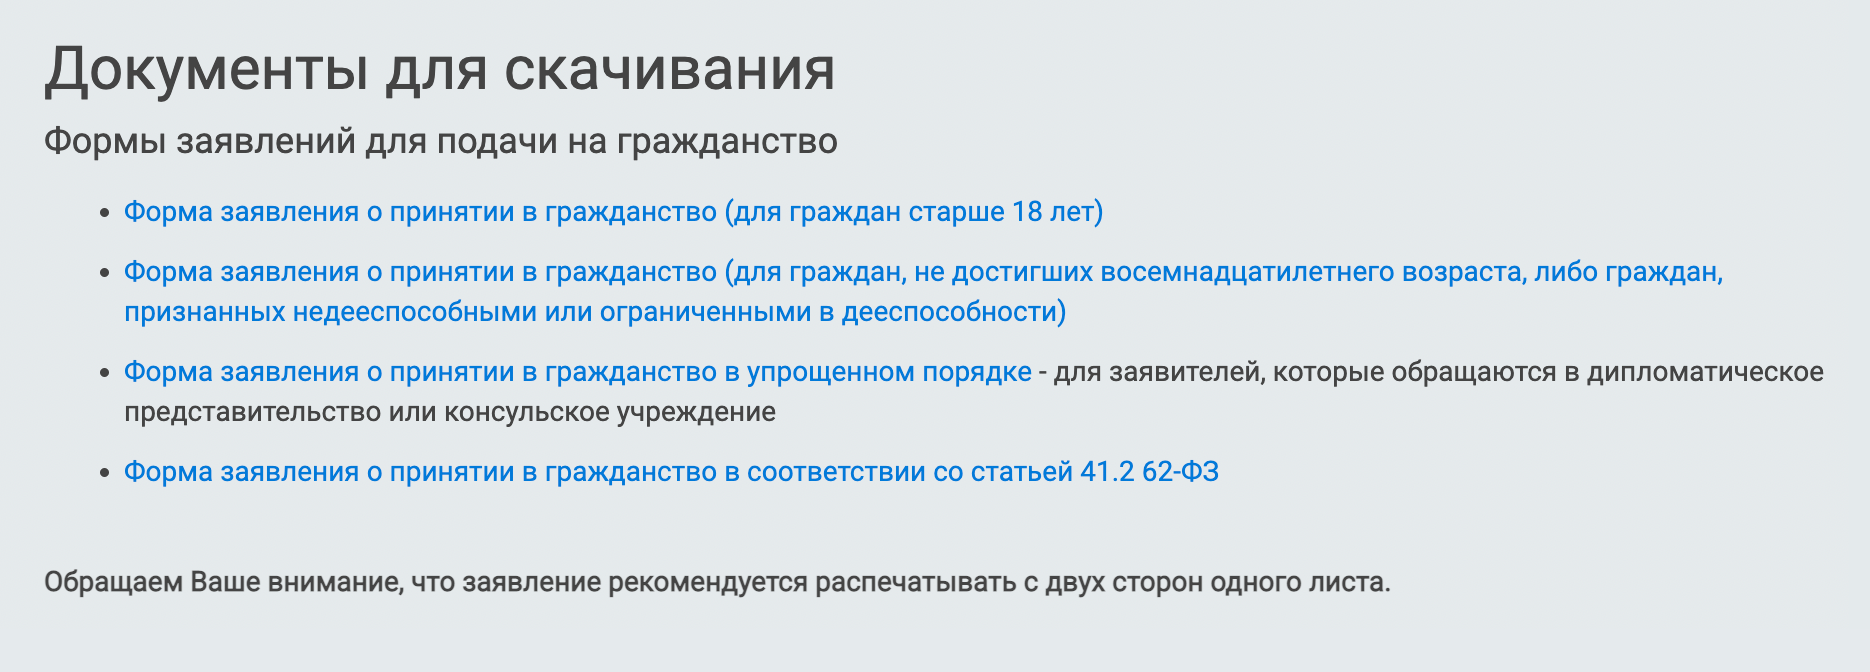 Форму заявления можно найти на сайте миграционного центра МВД Москвы, в разделе «Документы для скачивания»